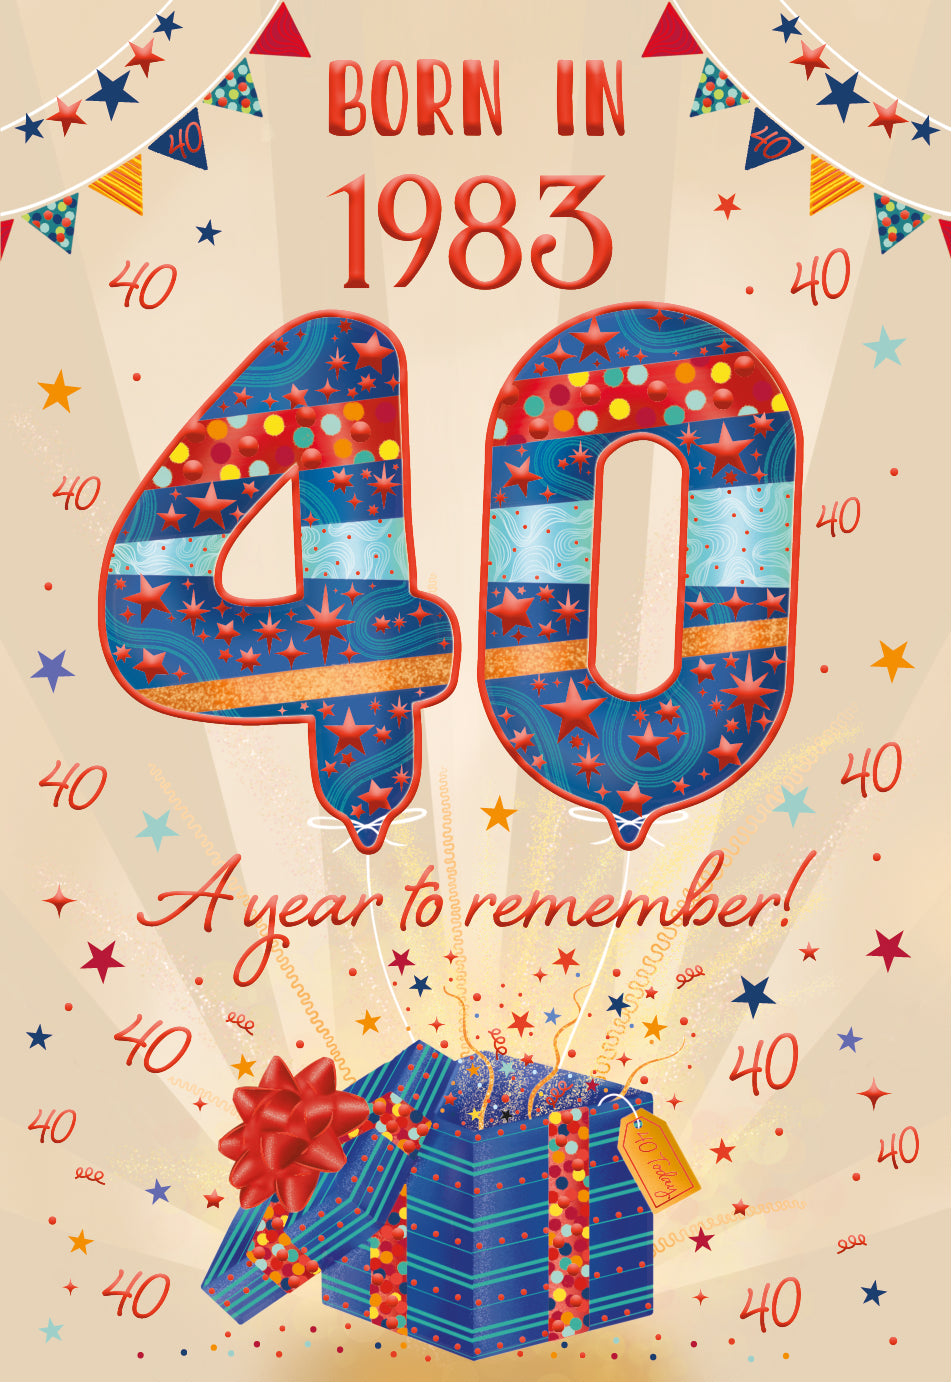 40th birthday card - born in 1983